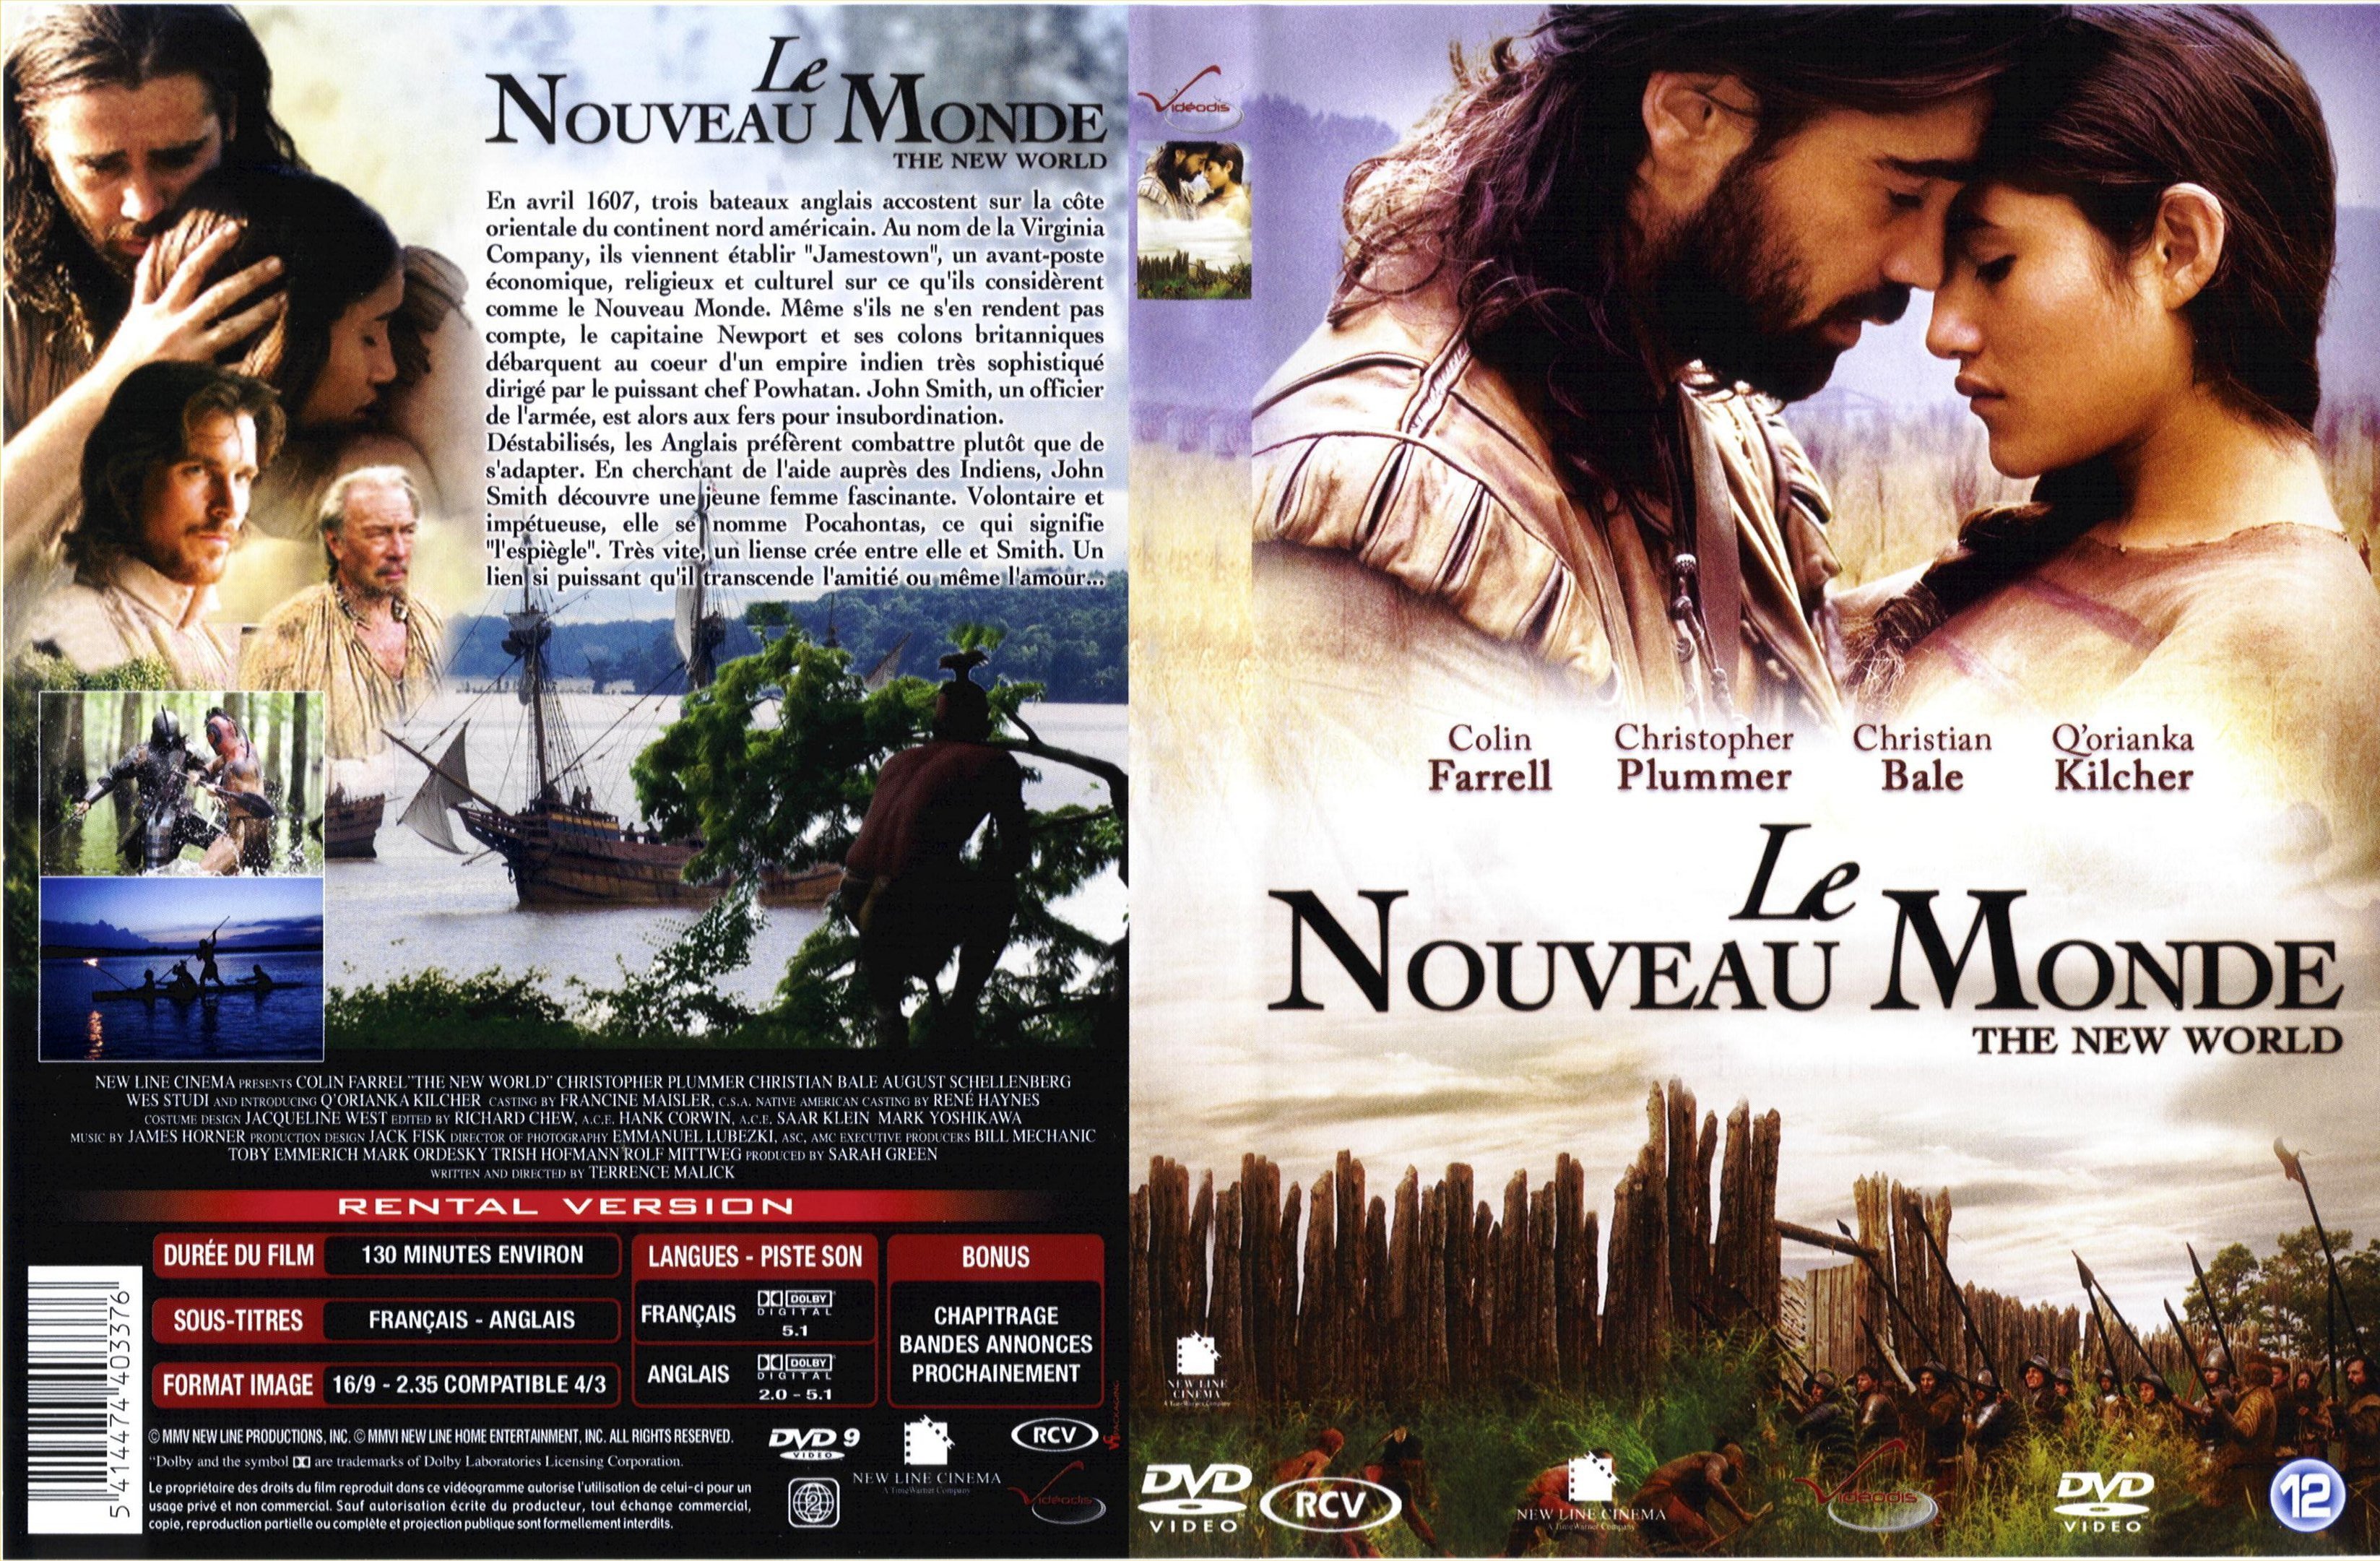 Jaquette DVD Le nouveau monde v3